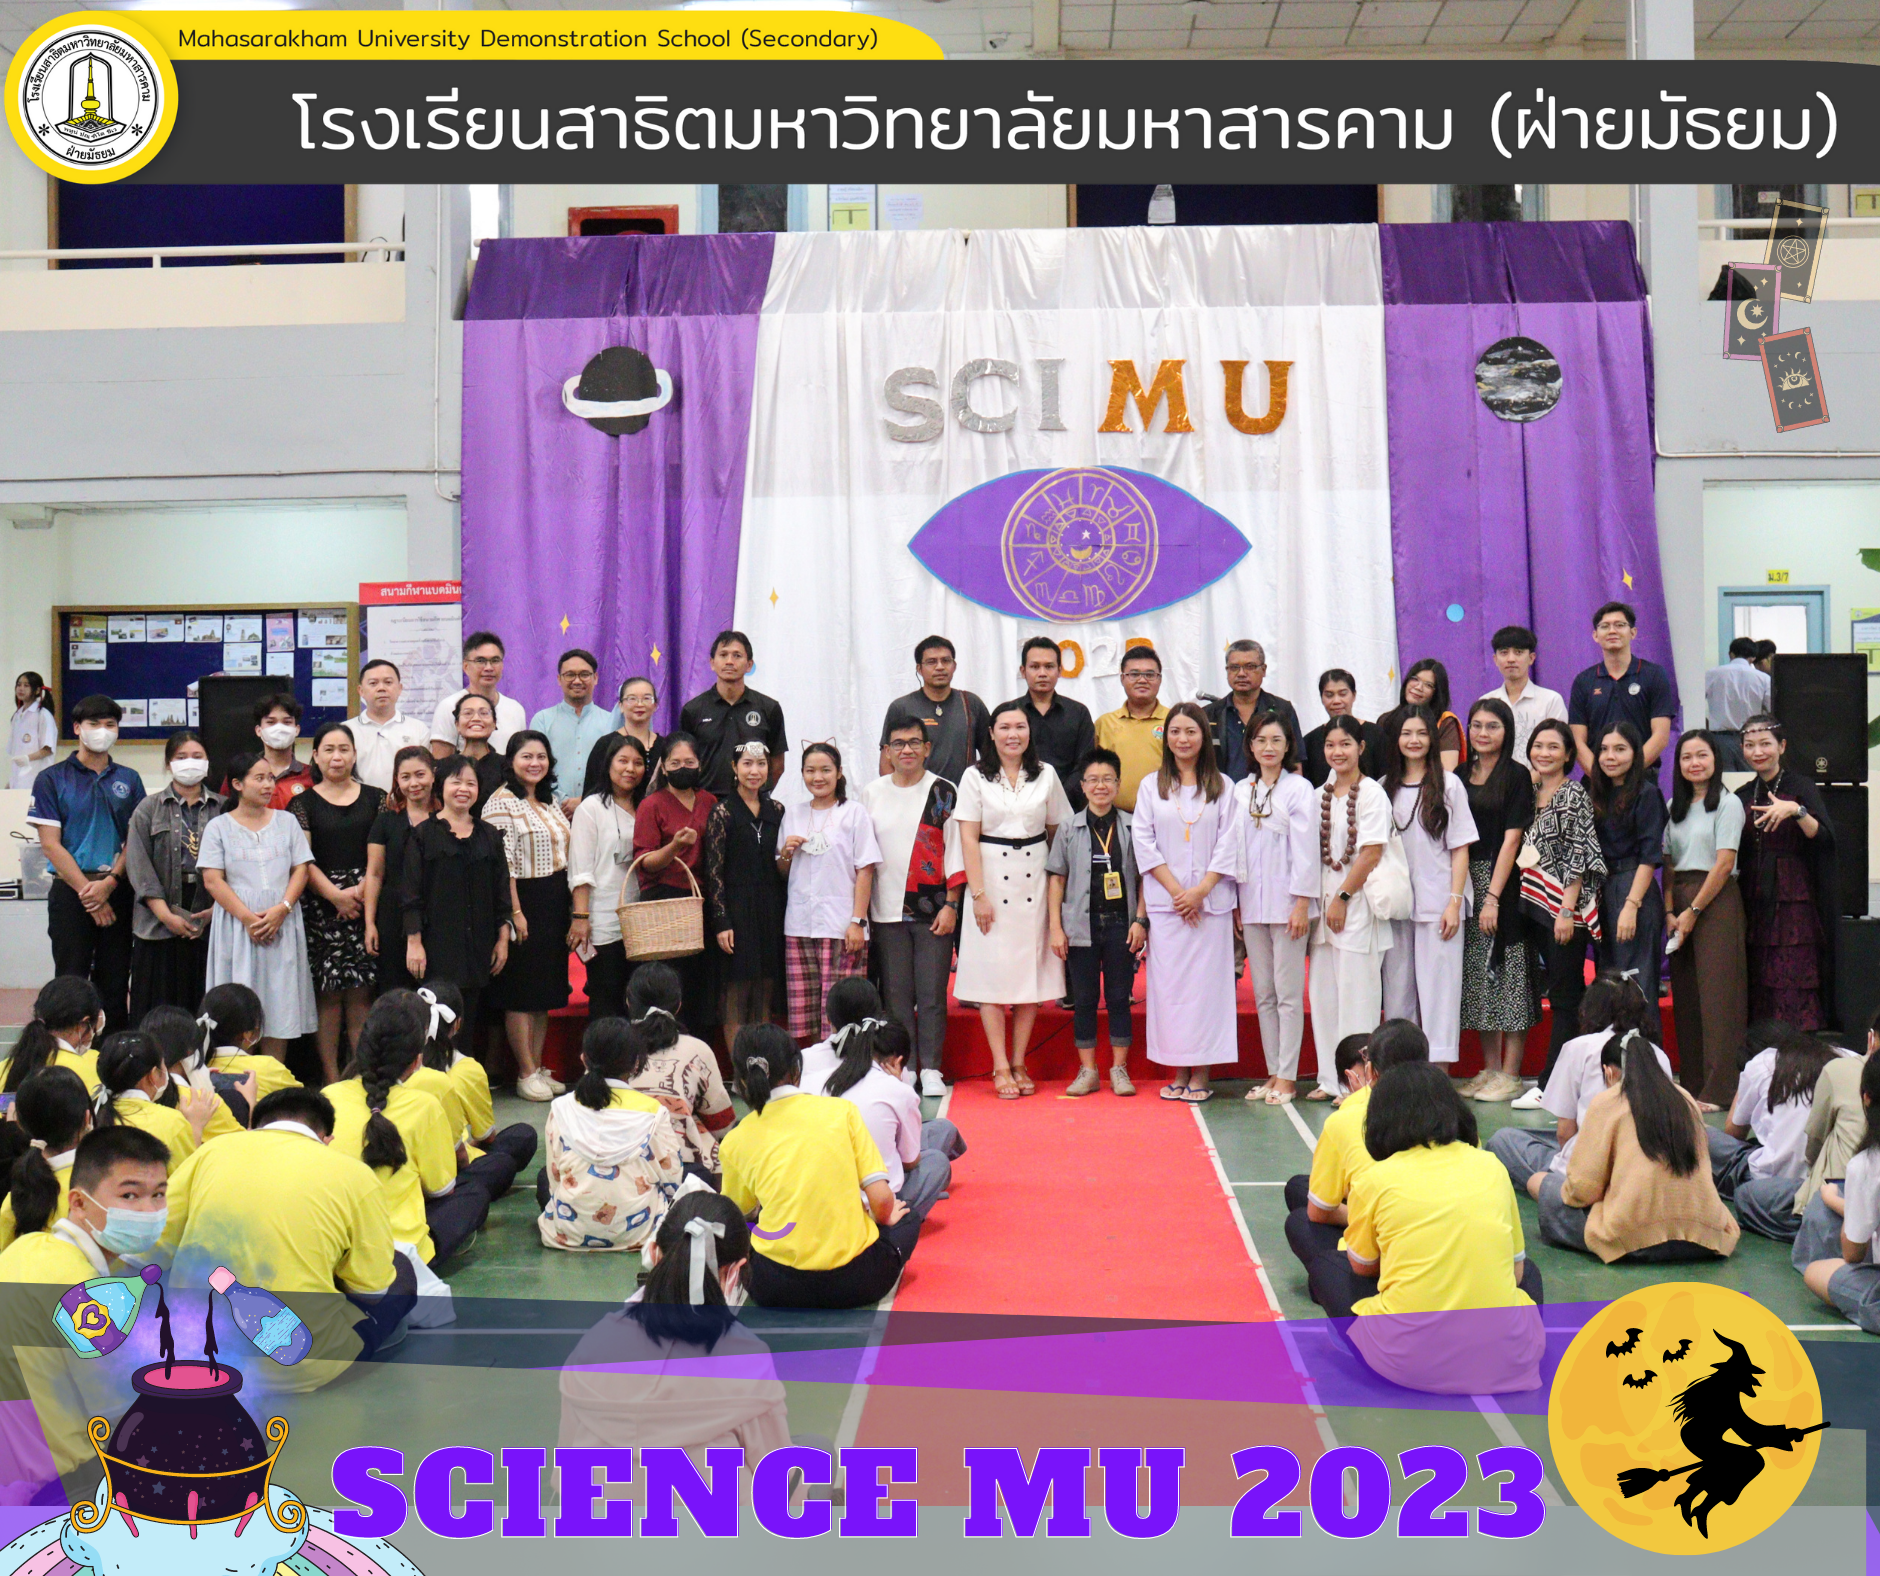  กลุ่มสาระการเรียนรู้วิทยาศาสตร์และเทคโนโลยี และ กลุ่มสาระการเรียนรู้คณิตศาสตร์จัดกิจกรรมสัปดาห์วิทยาศาสตร์  SCINECE MU 2023 เพื่อให้นักเรียนได้ร่วมกิจกรรมวิทยาศาสตร์และเทคโนโลยีที่จัดขึ้นตั้งแต่วันที่ 21 – 25 สิงหาคม 2566 ตลอดจนเป็